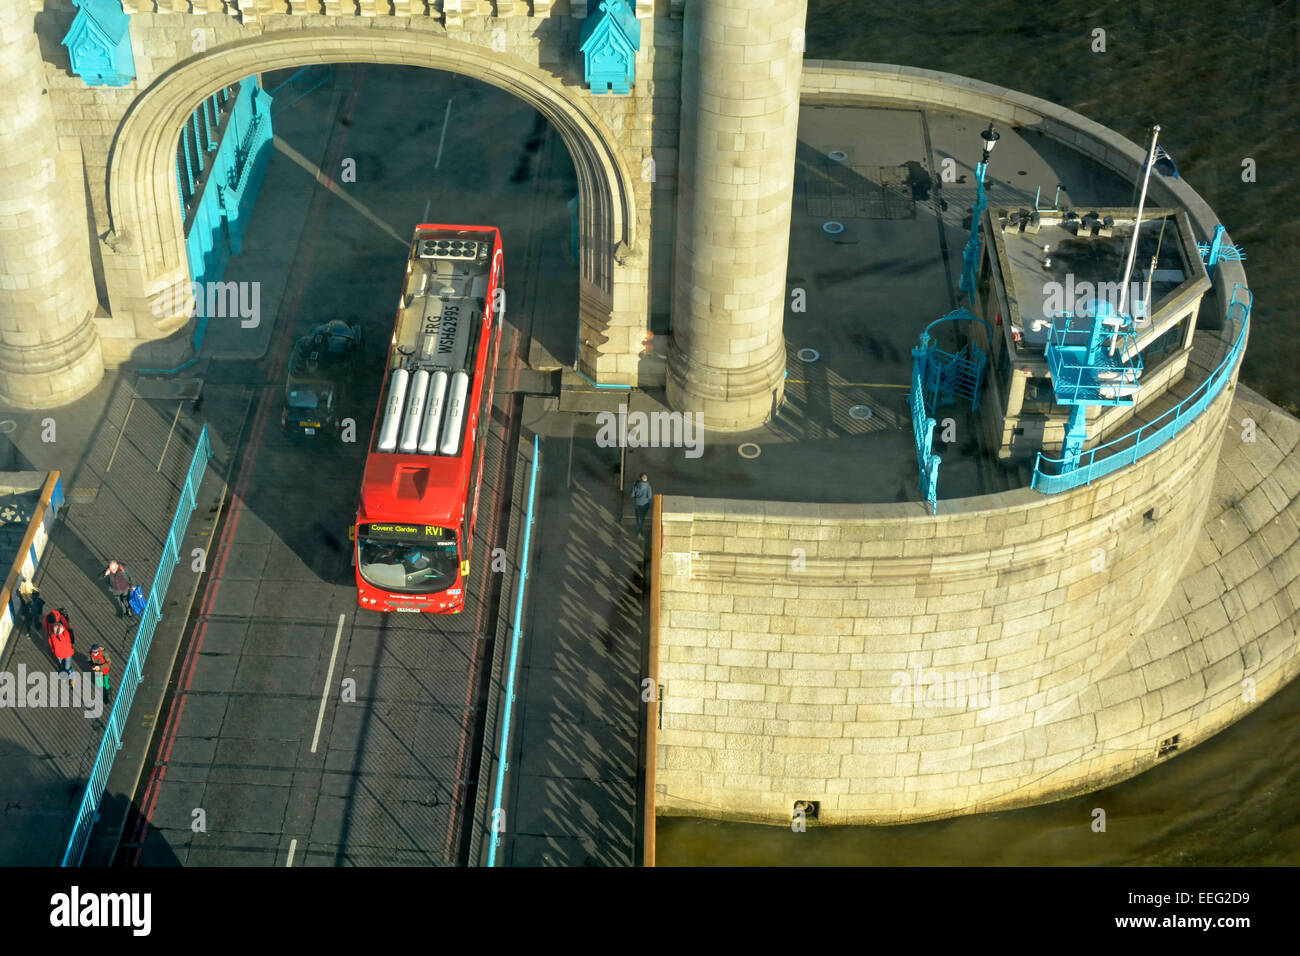 Vue aérienne de l'équipement monté sur le toit d'autobus à hydrogène sur le marché de Londres, RV1 sur le Tower Bridge vu de high level bridge walkway Londres Angleterre Royaume-uni Thames ci-dessus Banque D'Images